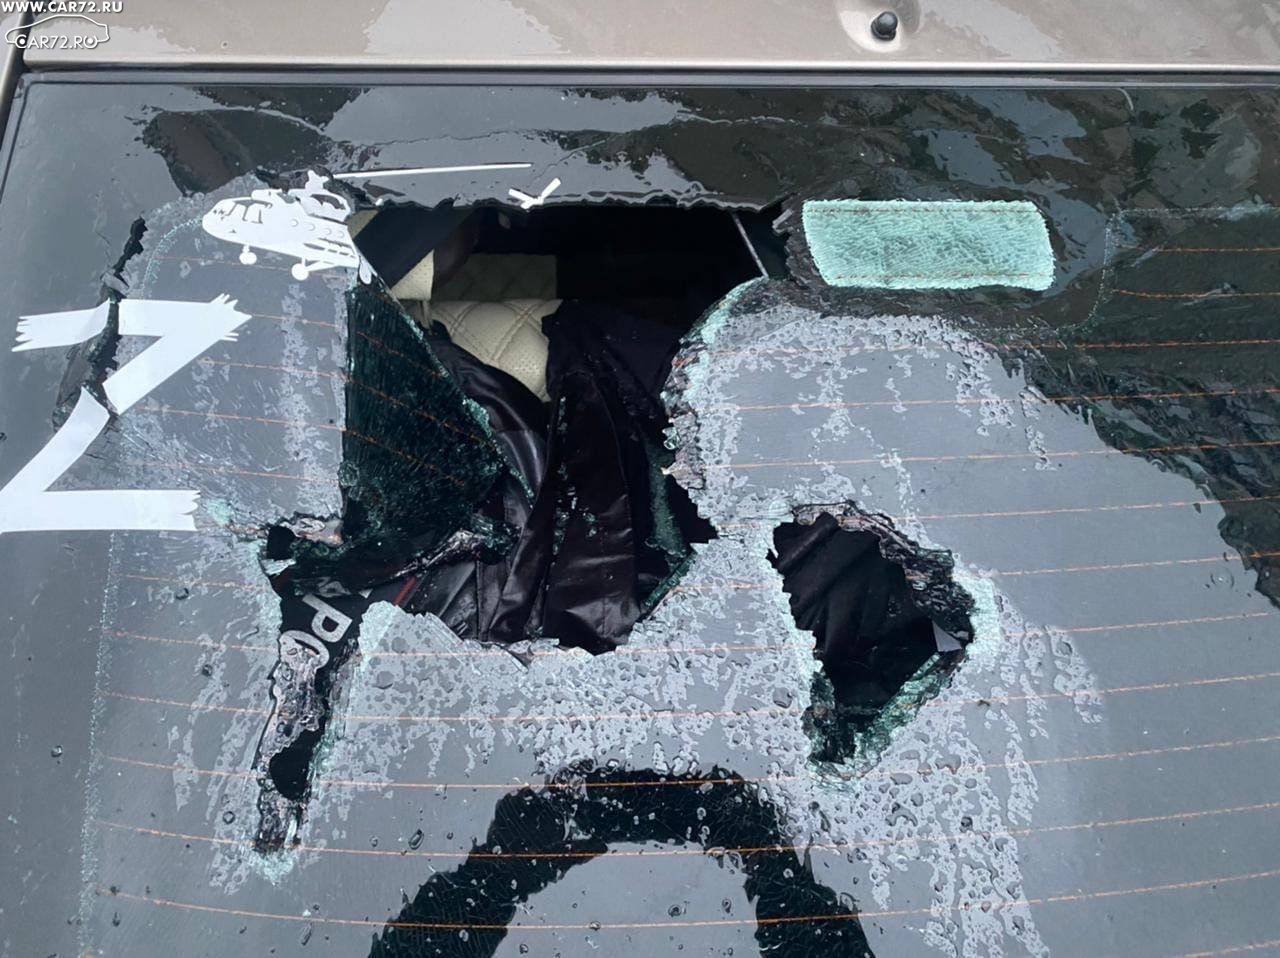 Нападение разбить. Разбитое окно машины. Разбили стекло в машине. Разбить стекло. Разбили машину с буквой z.